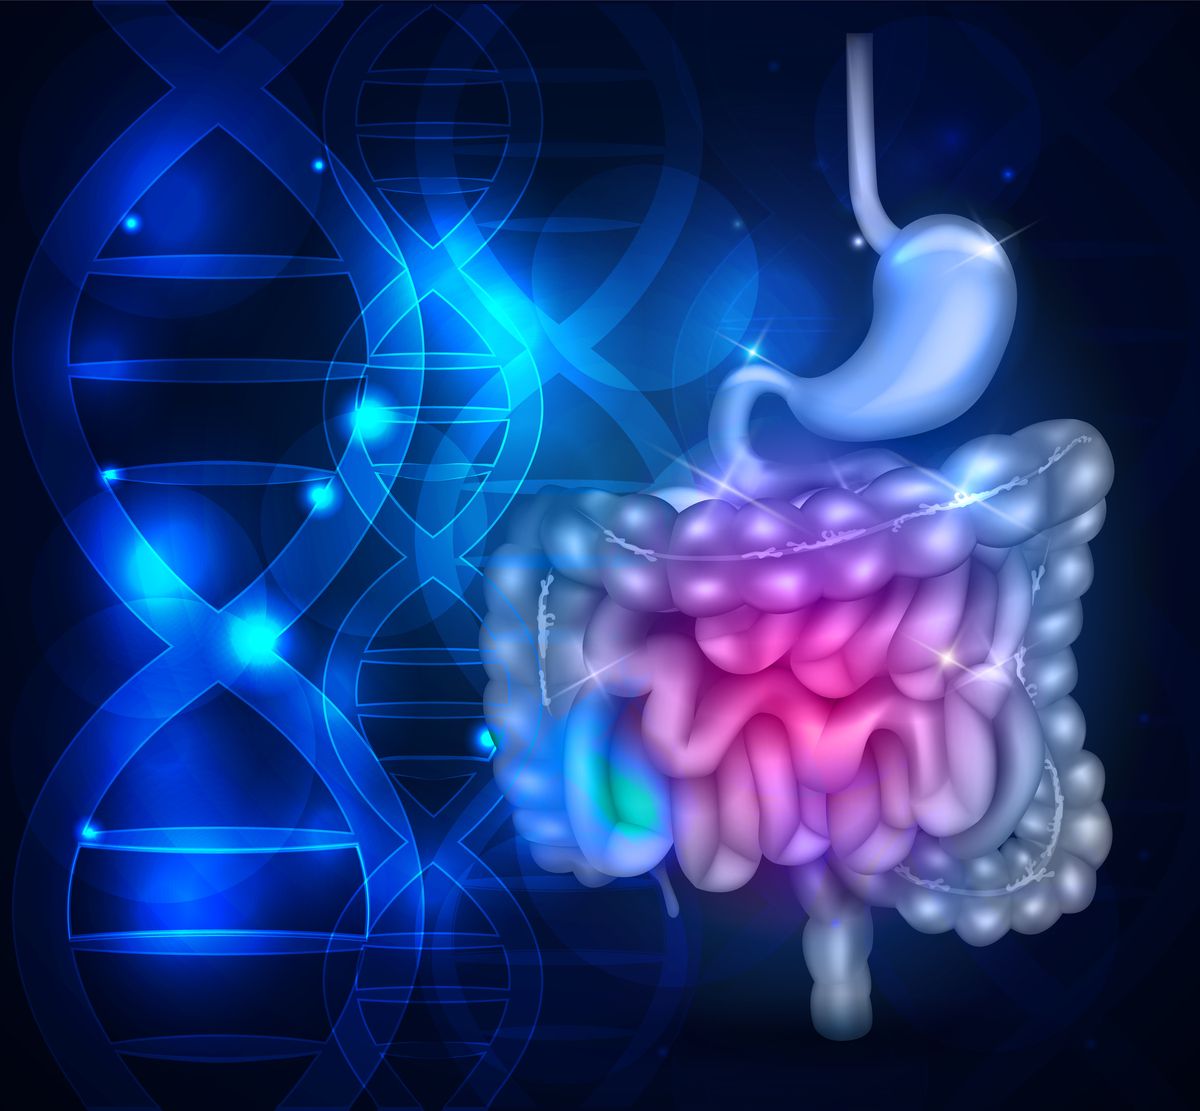 La biopsie gastro-intestinale peut déterminer le risque de maladie neurodégénérative